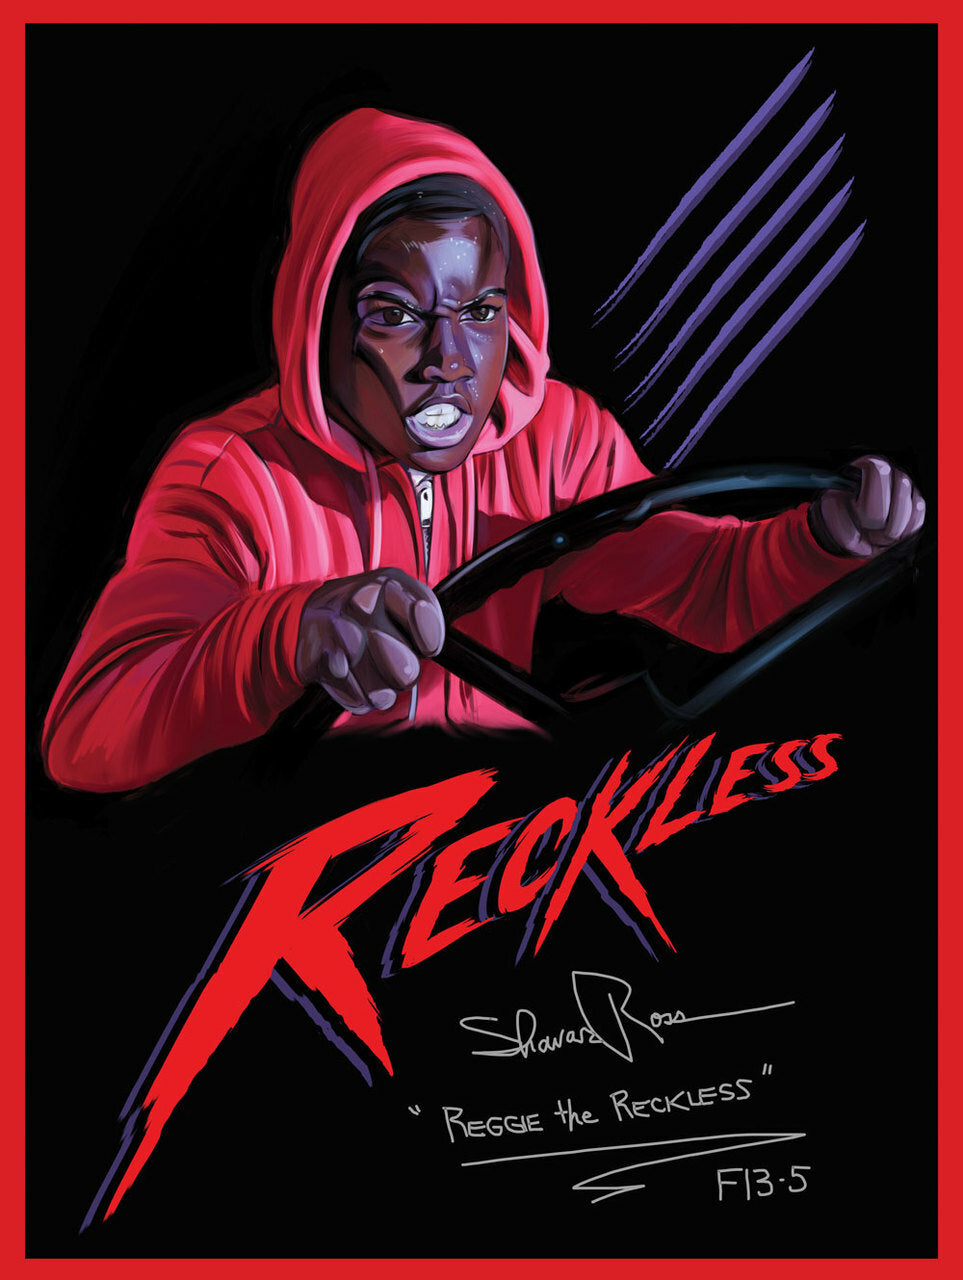 Signed Shavar Ross Reggie The Reckless Poster